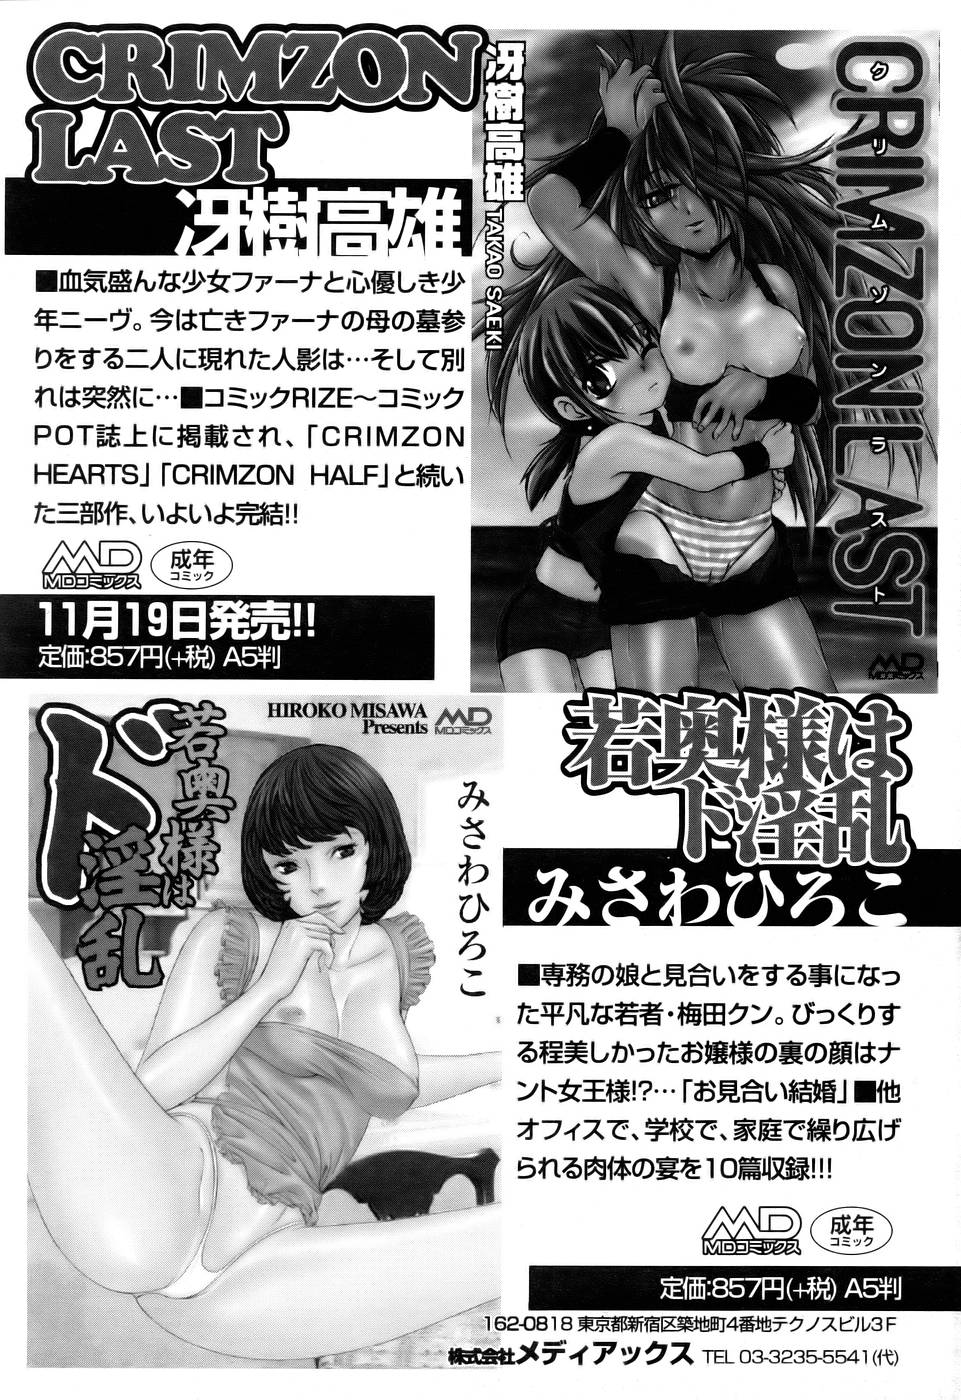 コミックPOT 2005年12月号 Vol.052